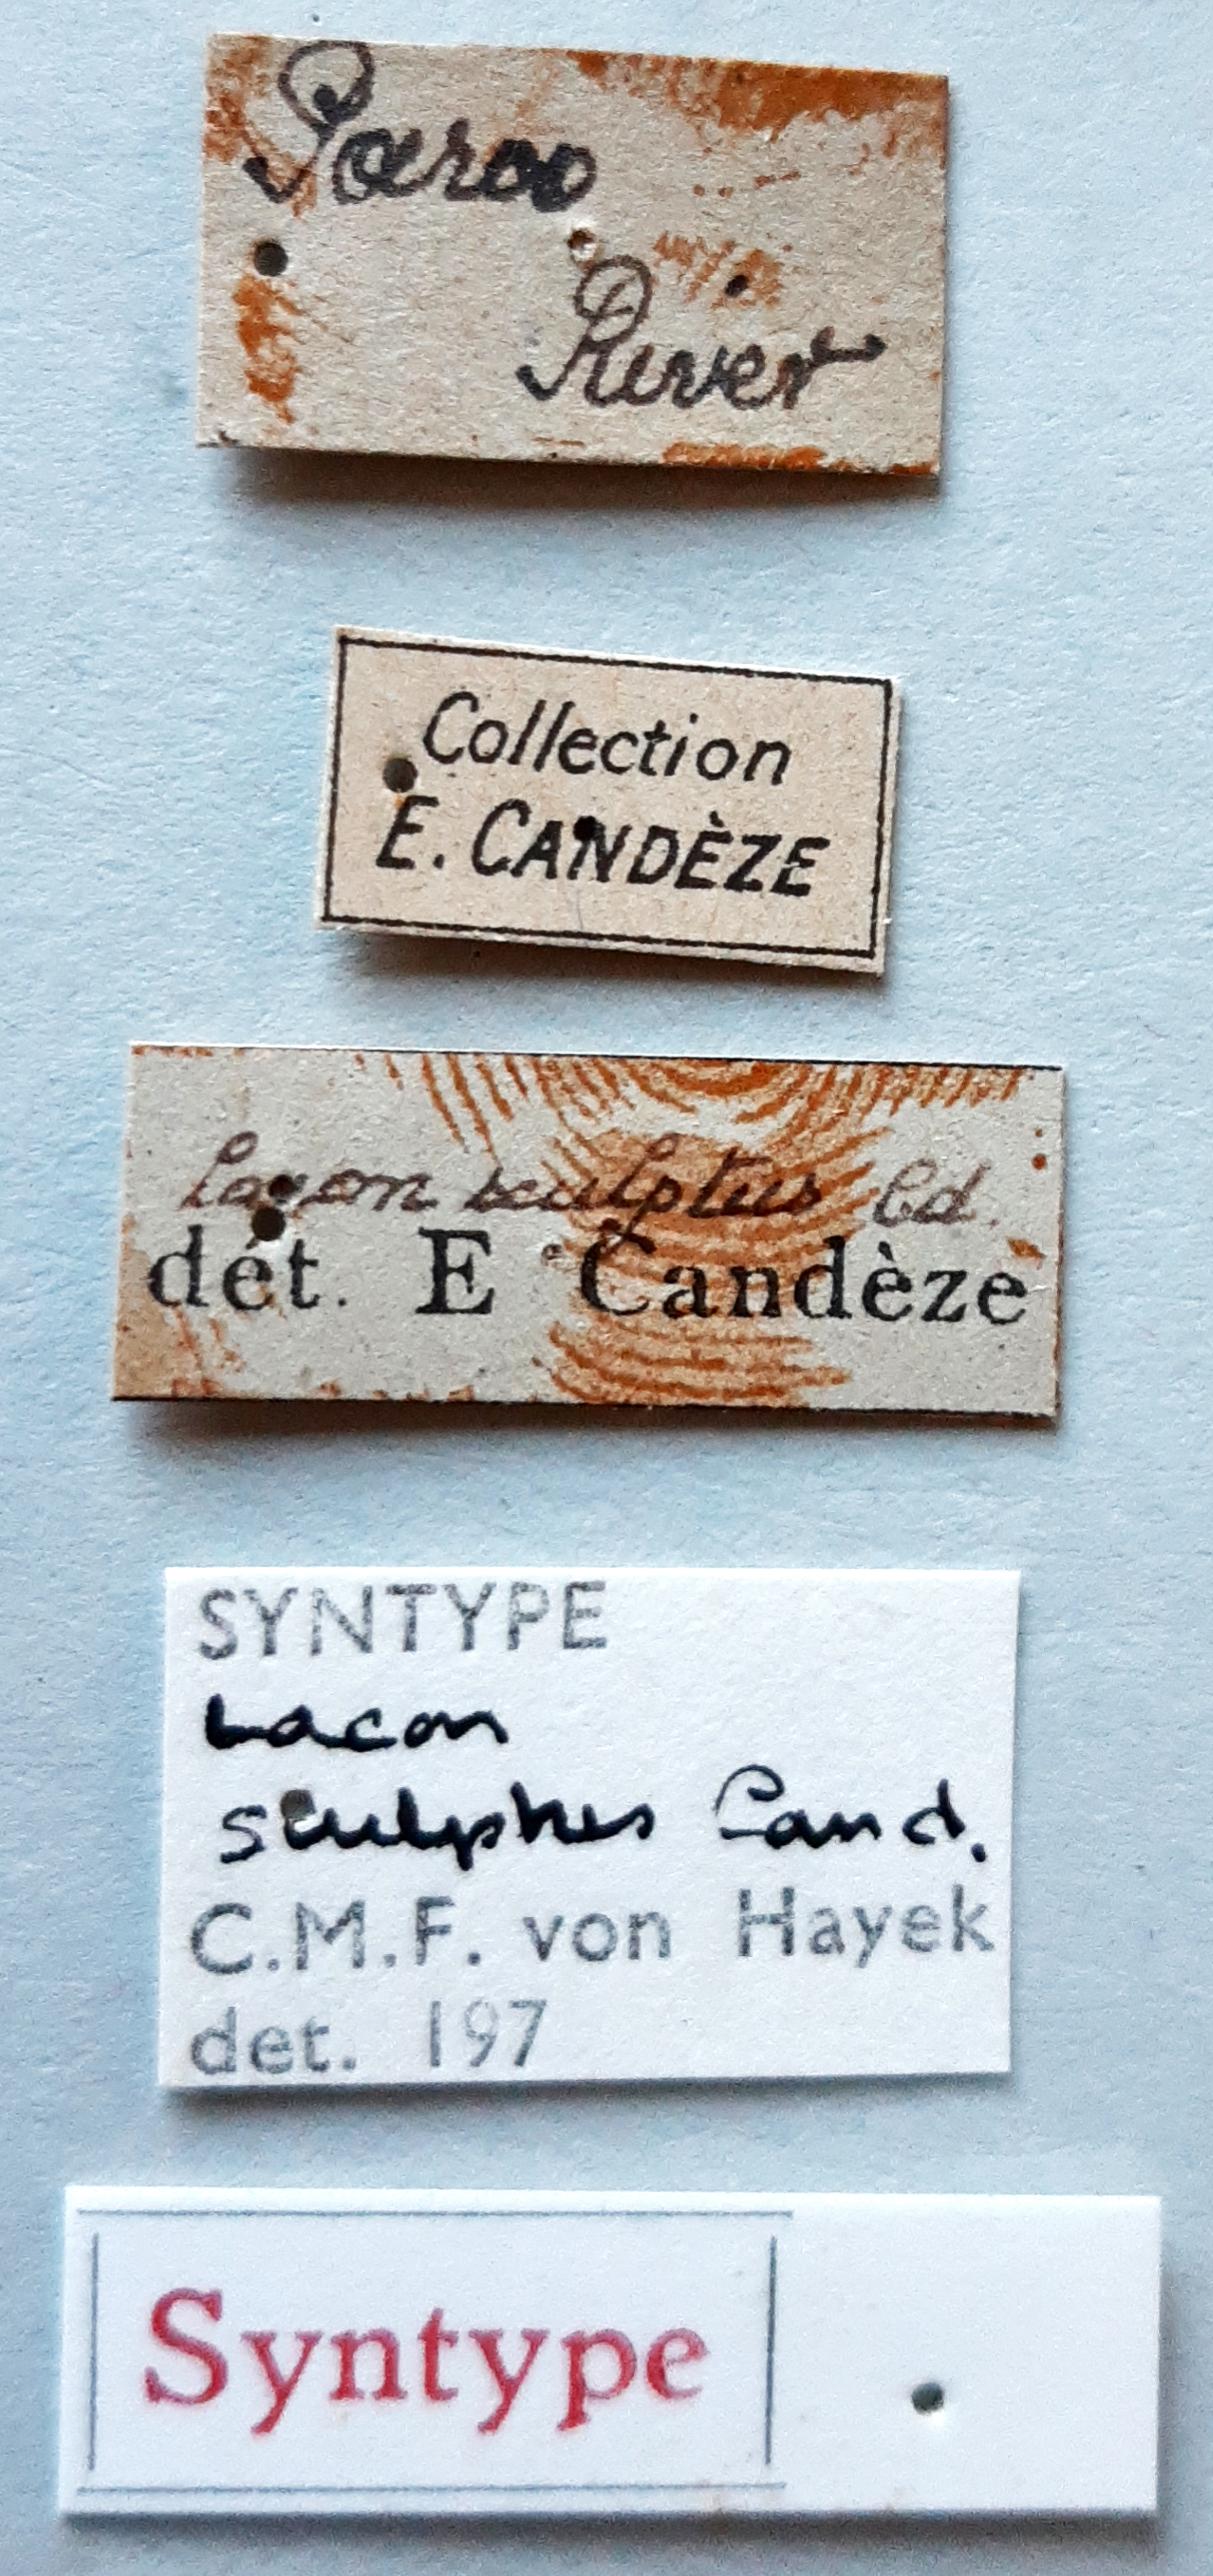 Lacon sculptus st labels